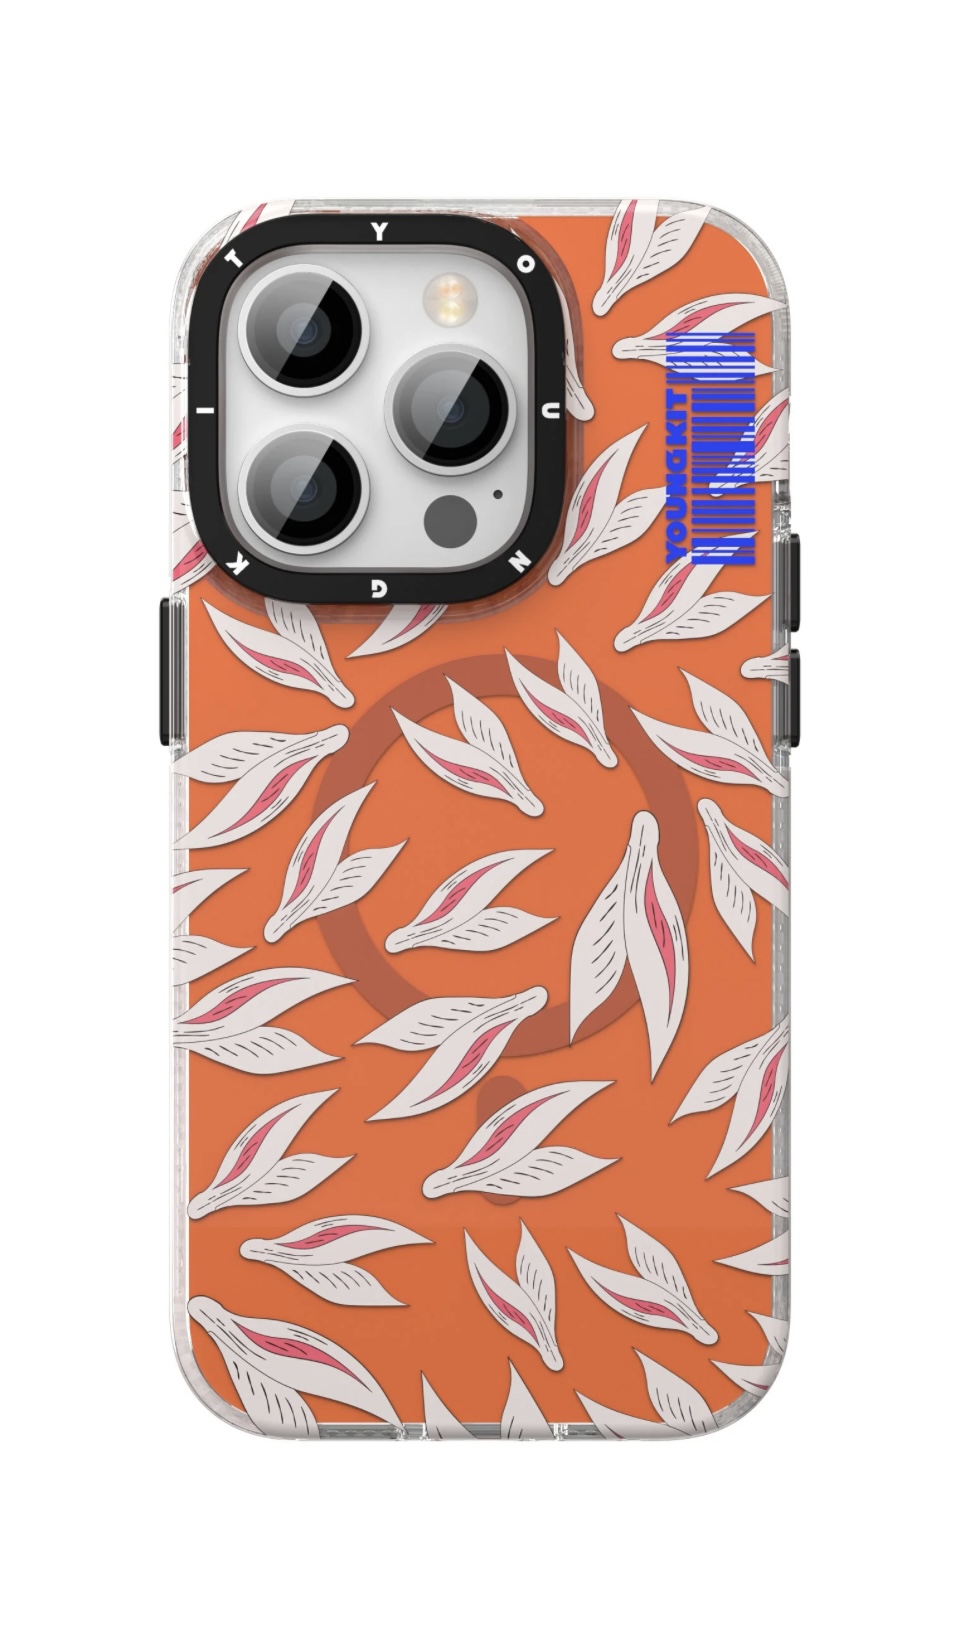 Youngkit Rabbit Magsafe iPhone 14/13 Kılıf-Orange